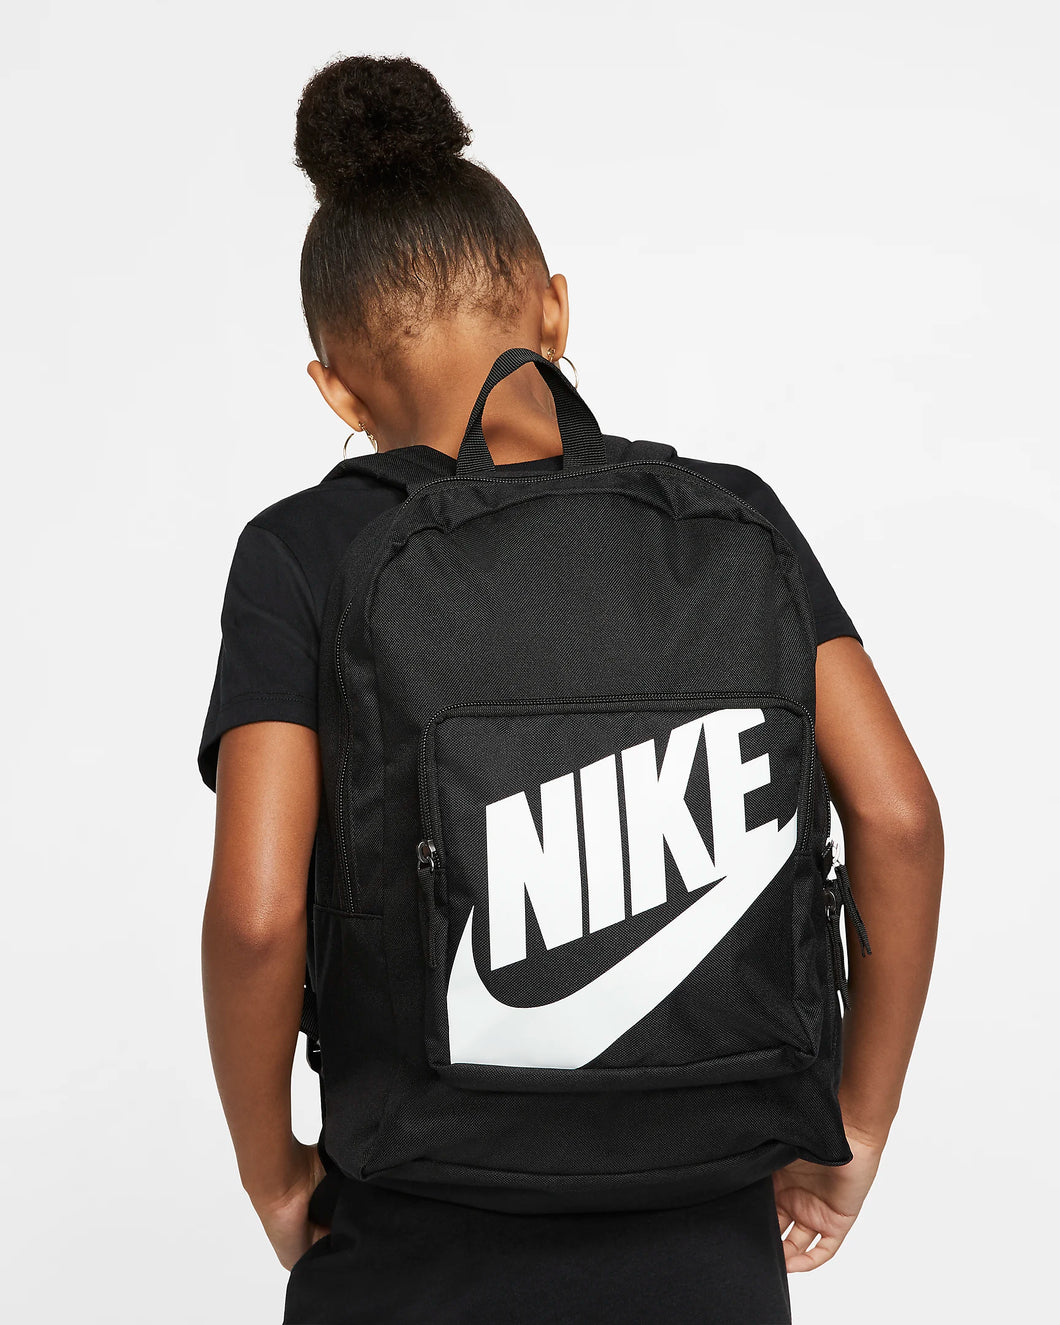 Nike 16L Backpack - Black